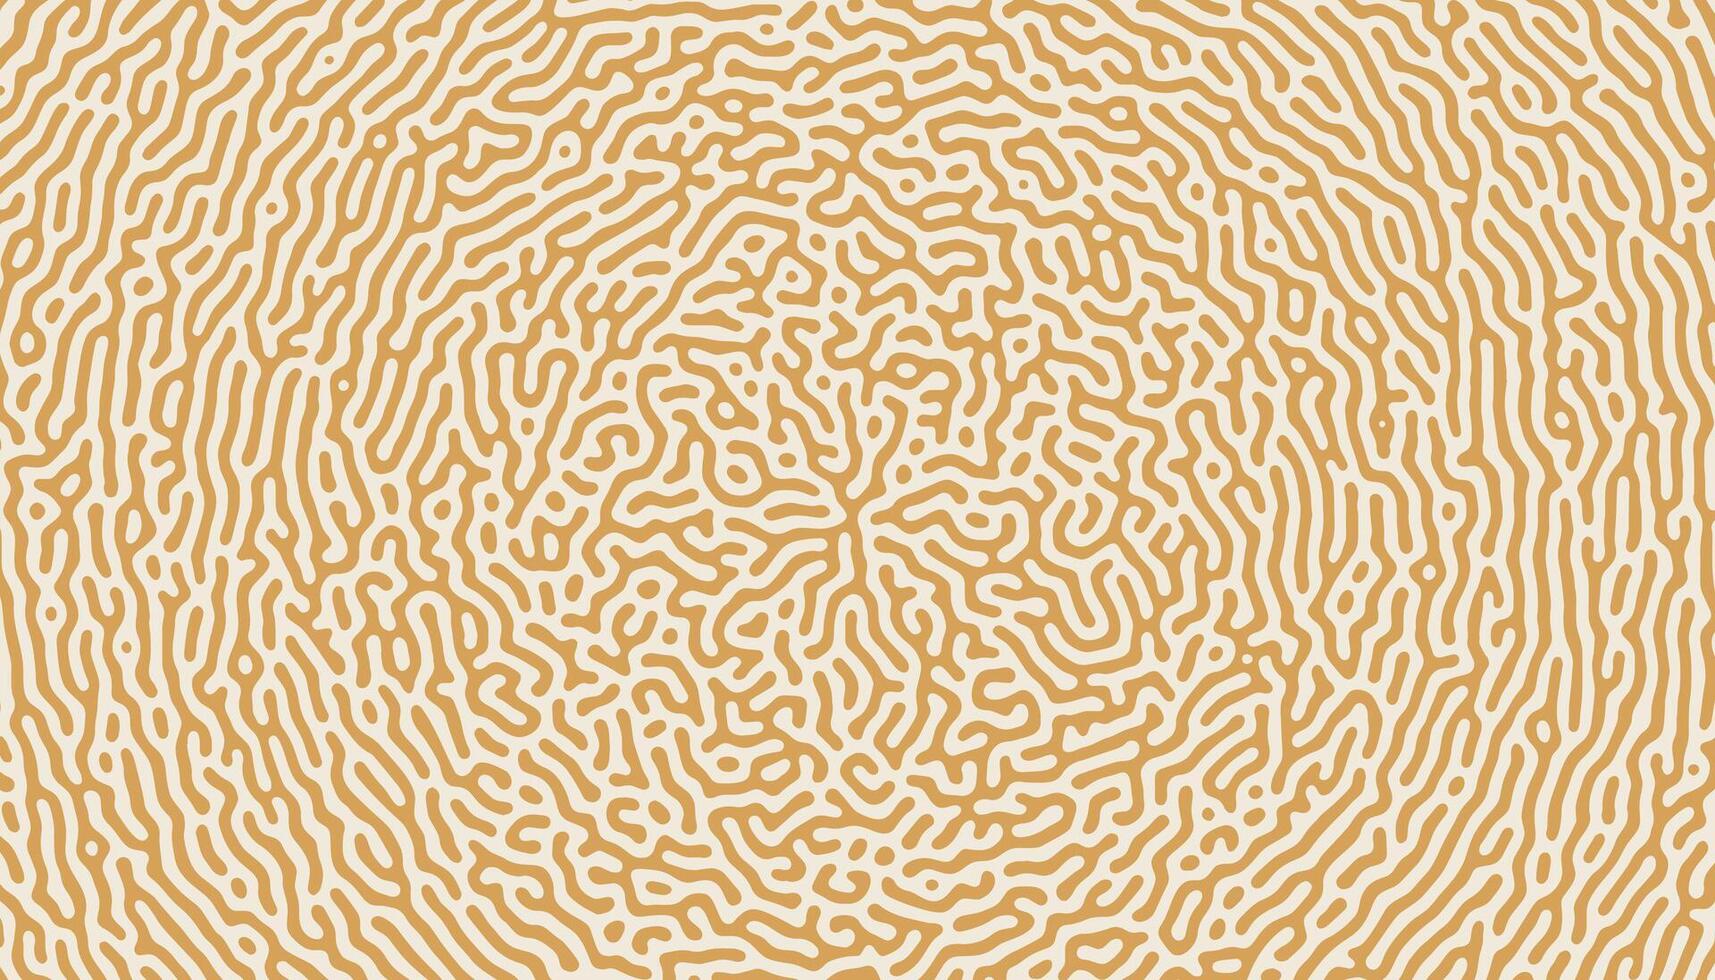 turing organisk spiral cirkulär former mönster bakgrund vektor illustration